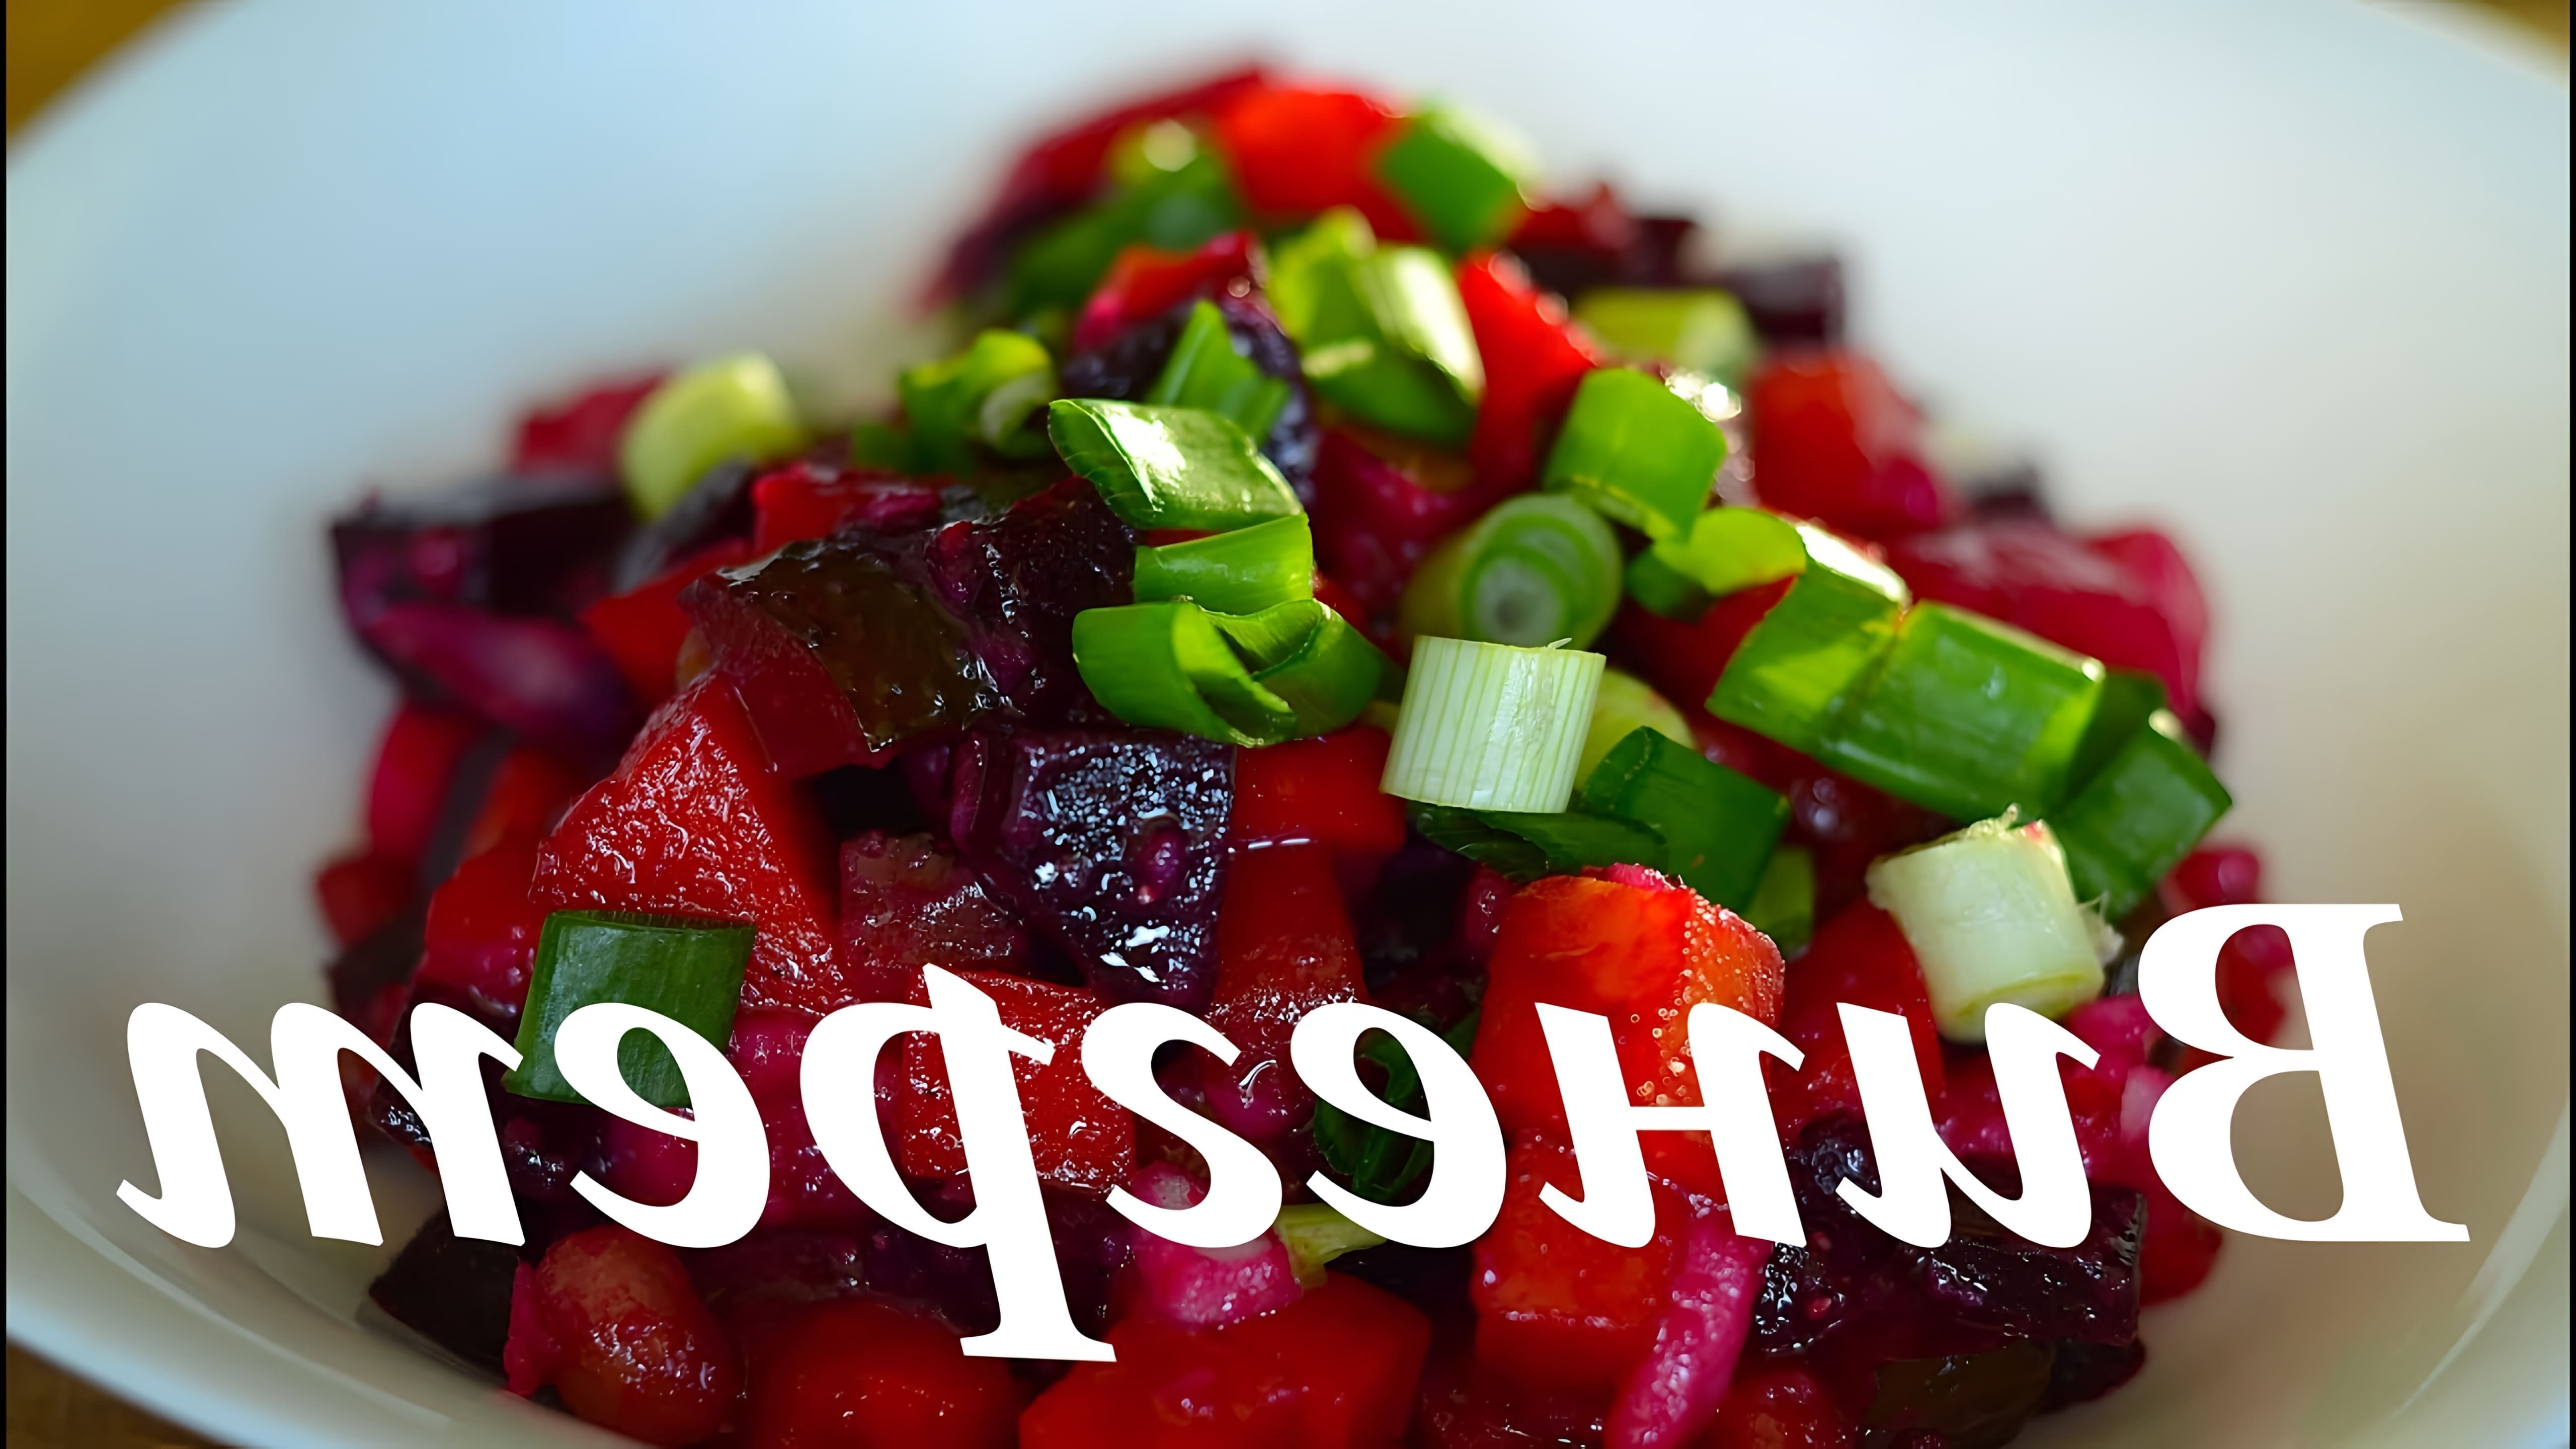 В этом видео автор рассказывает о приготовлении винегрета, одного из самых популярных салатов в России